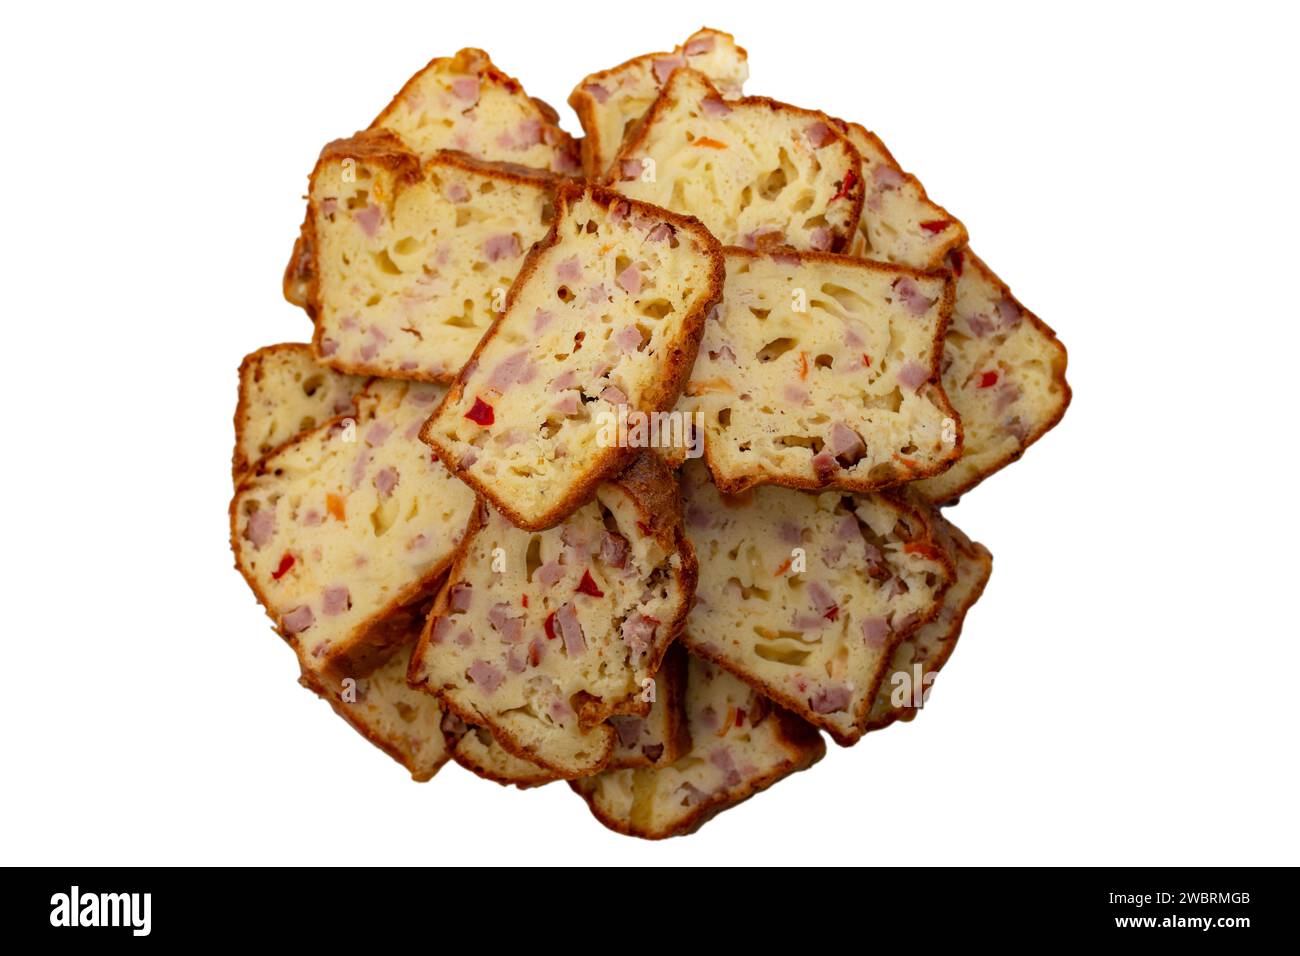 Torta salata con formaggio e prosciutto tagliati a fette e cotti, isolata su bianco Foto Stock